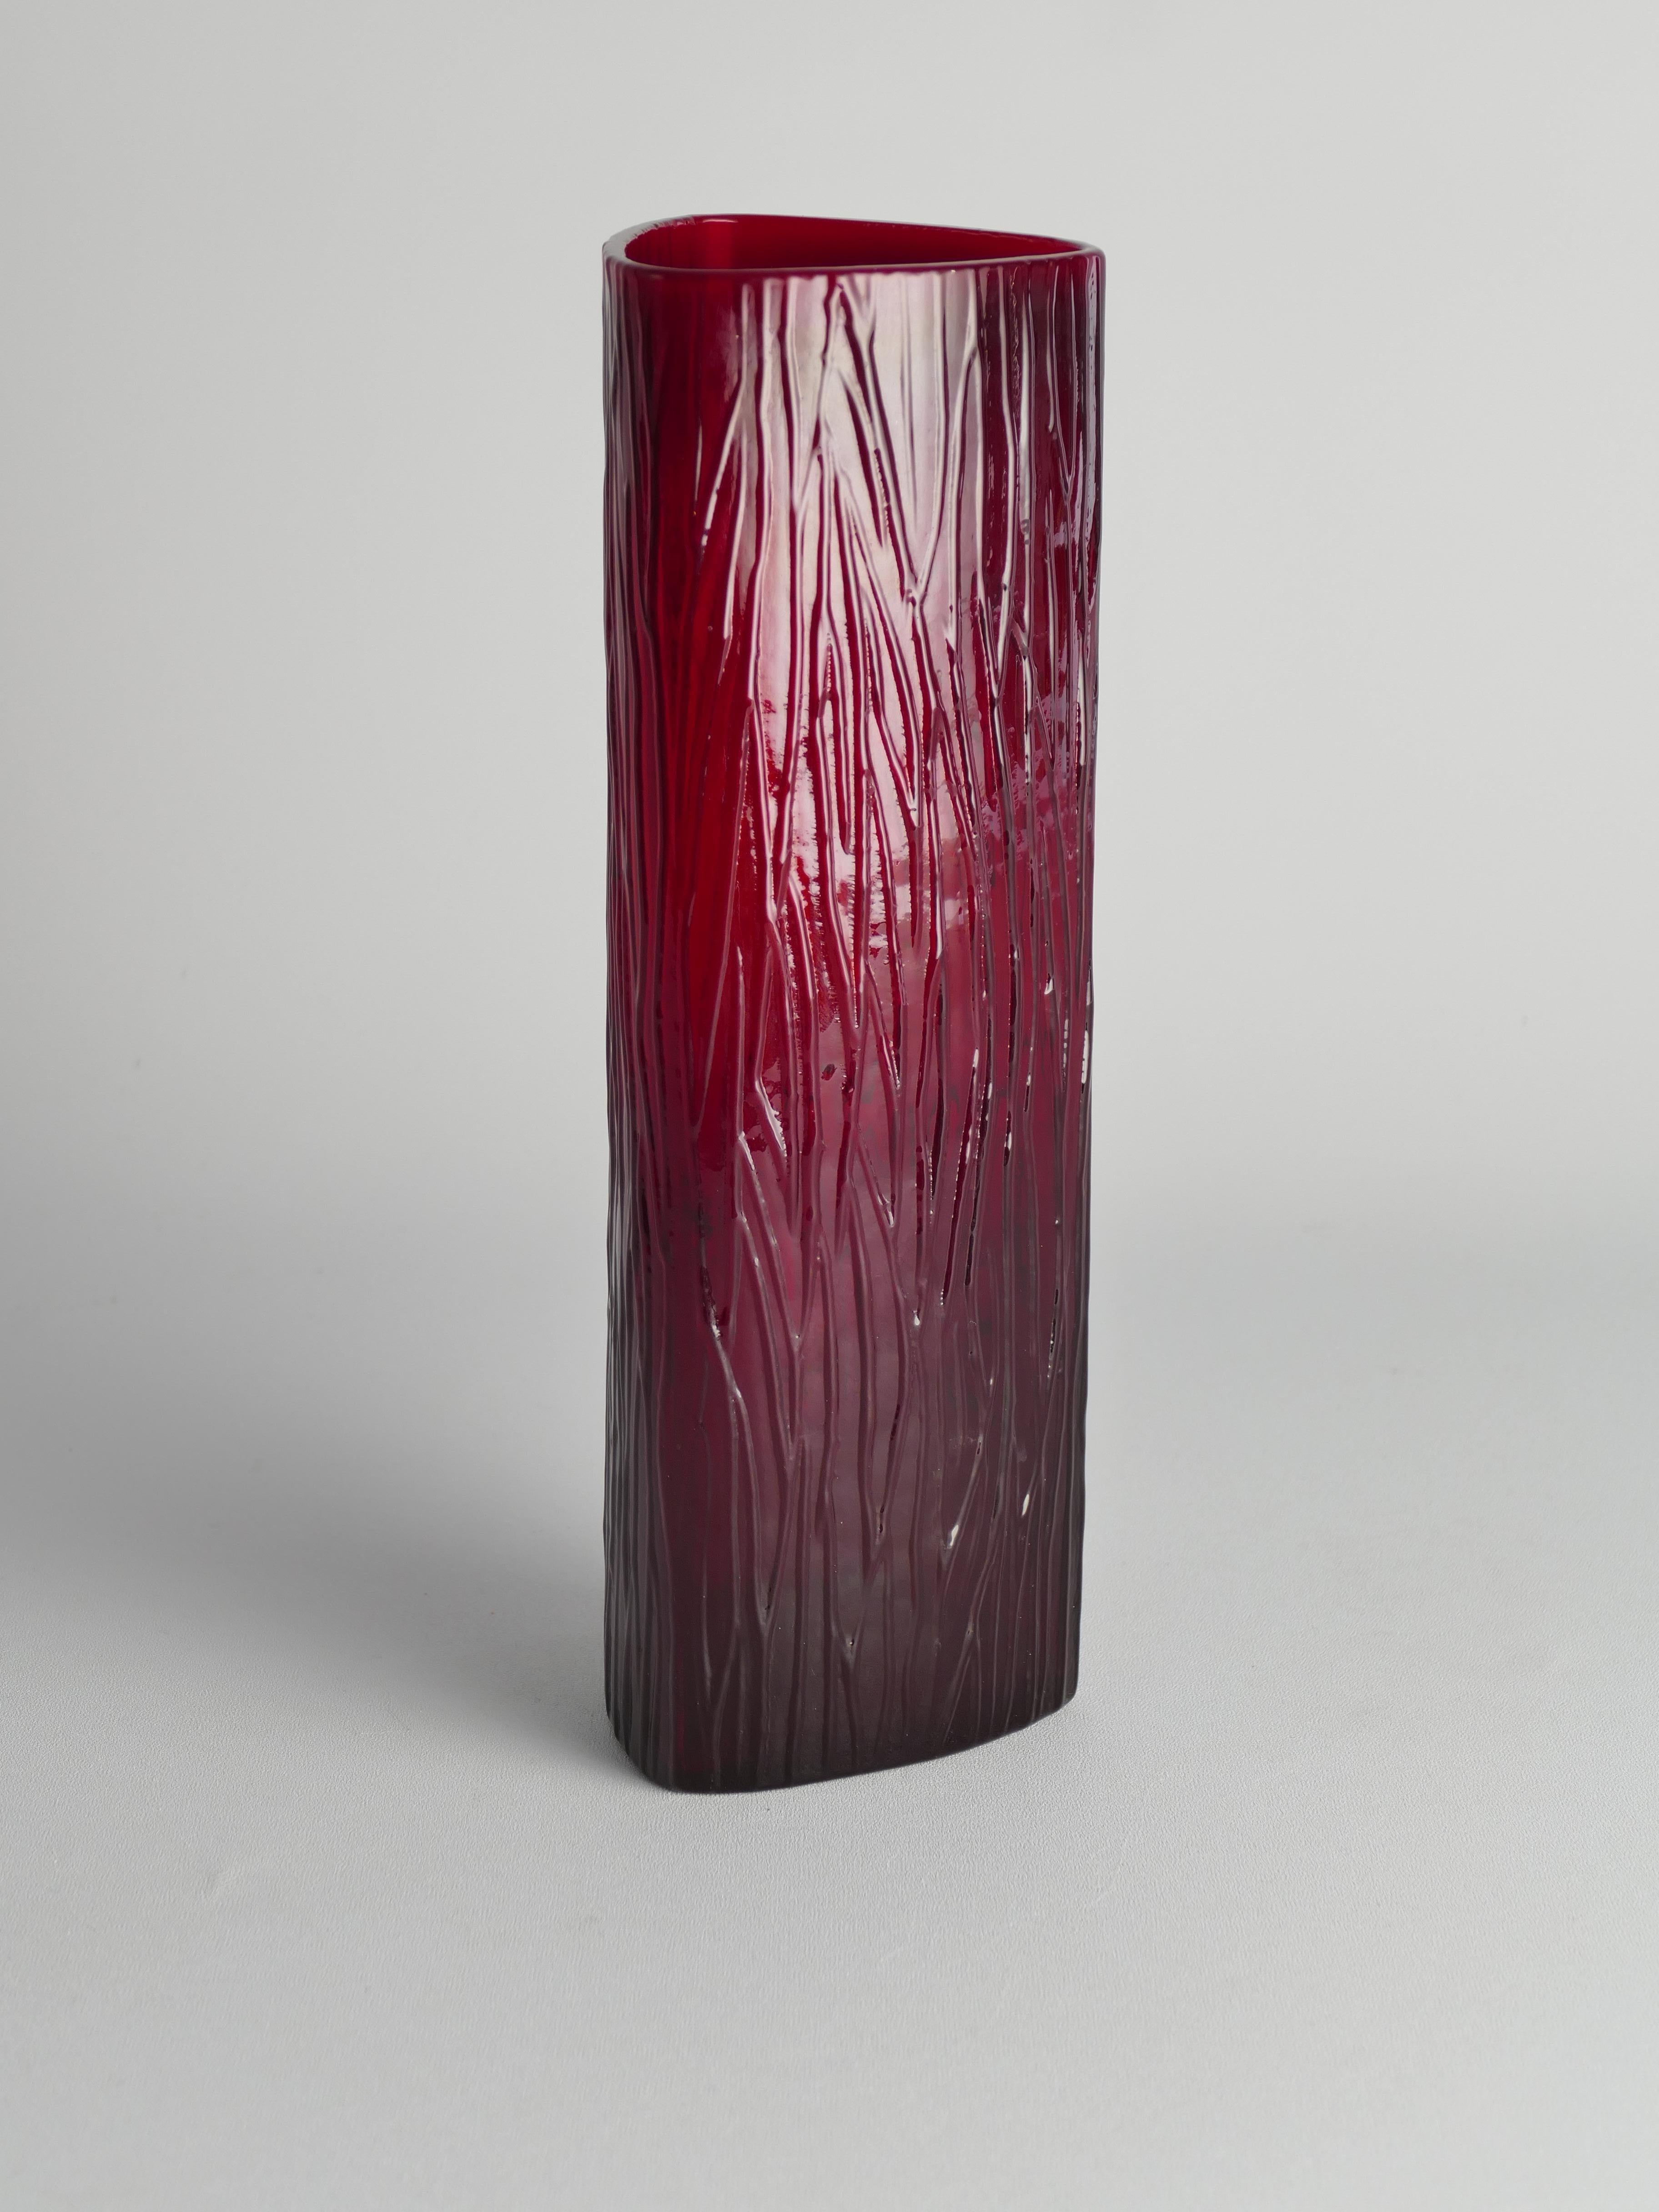 Hand-Crafted Swedish Red Devil Triangular Glass Vase by Christer Sjögren for Lindshammar For Sale